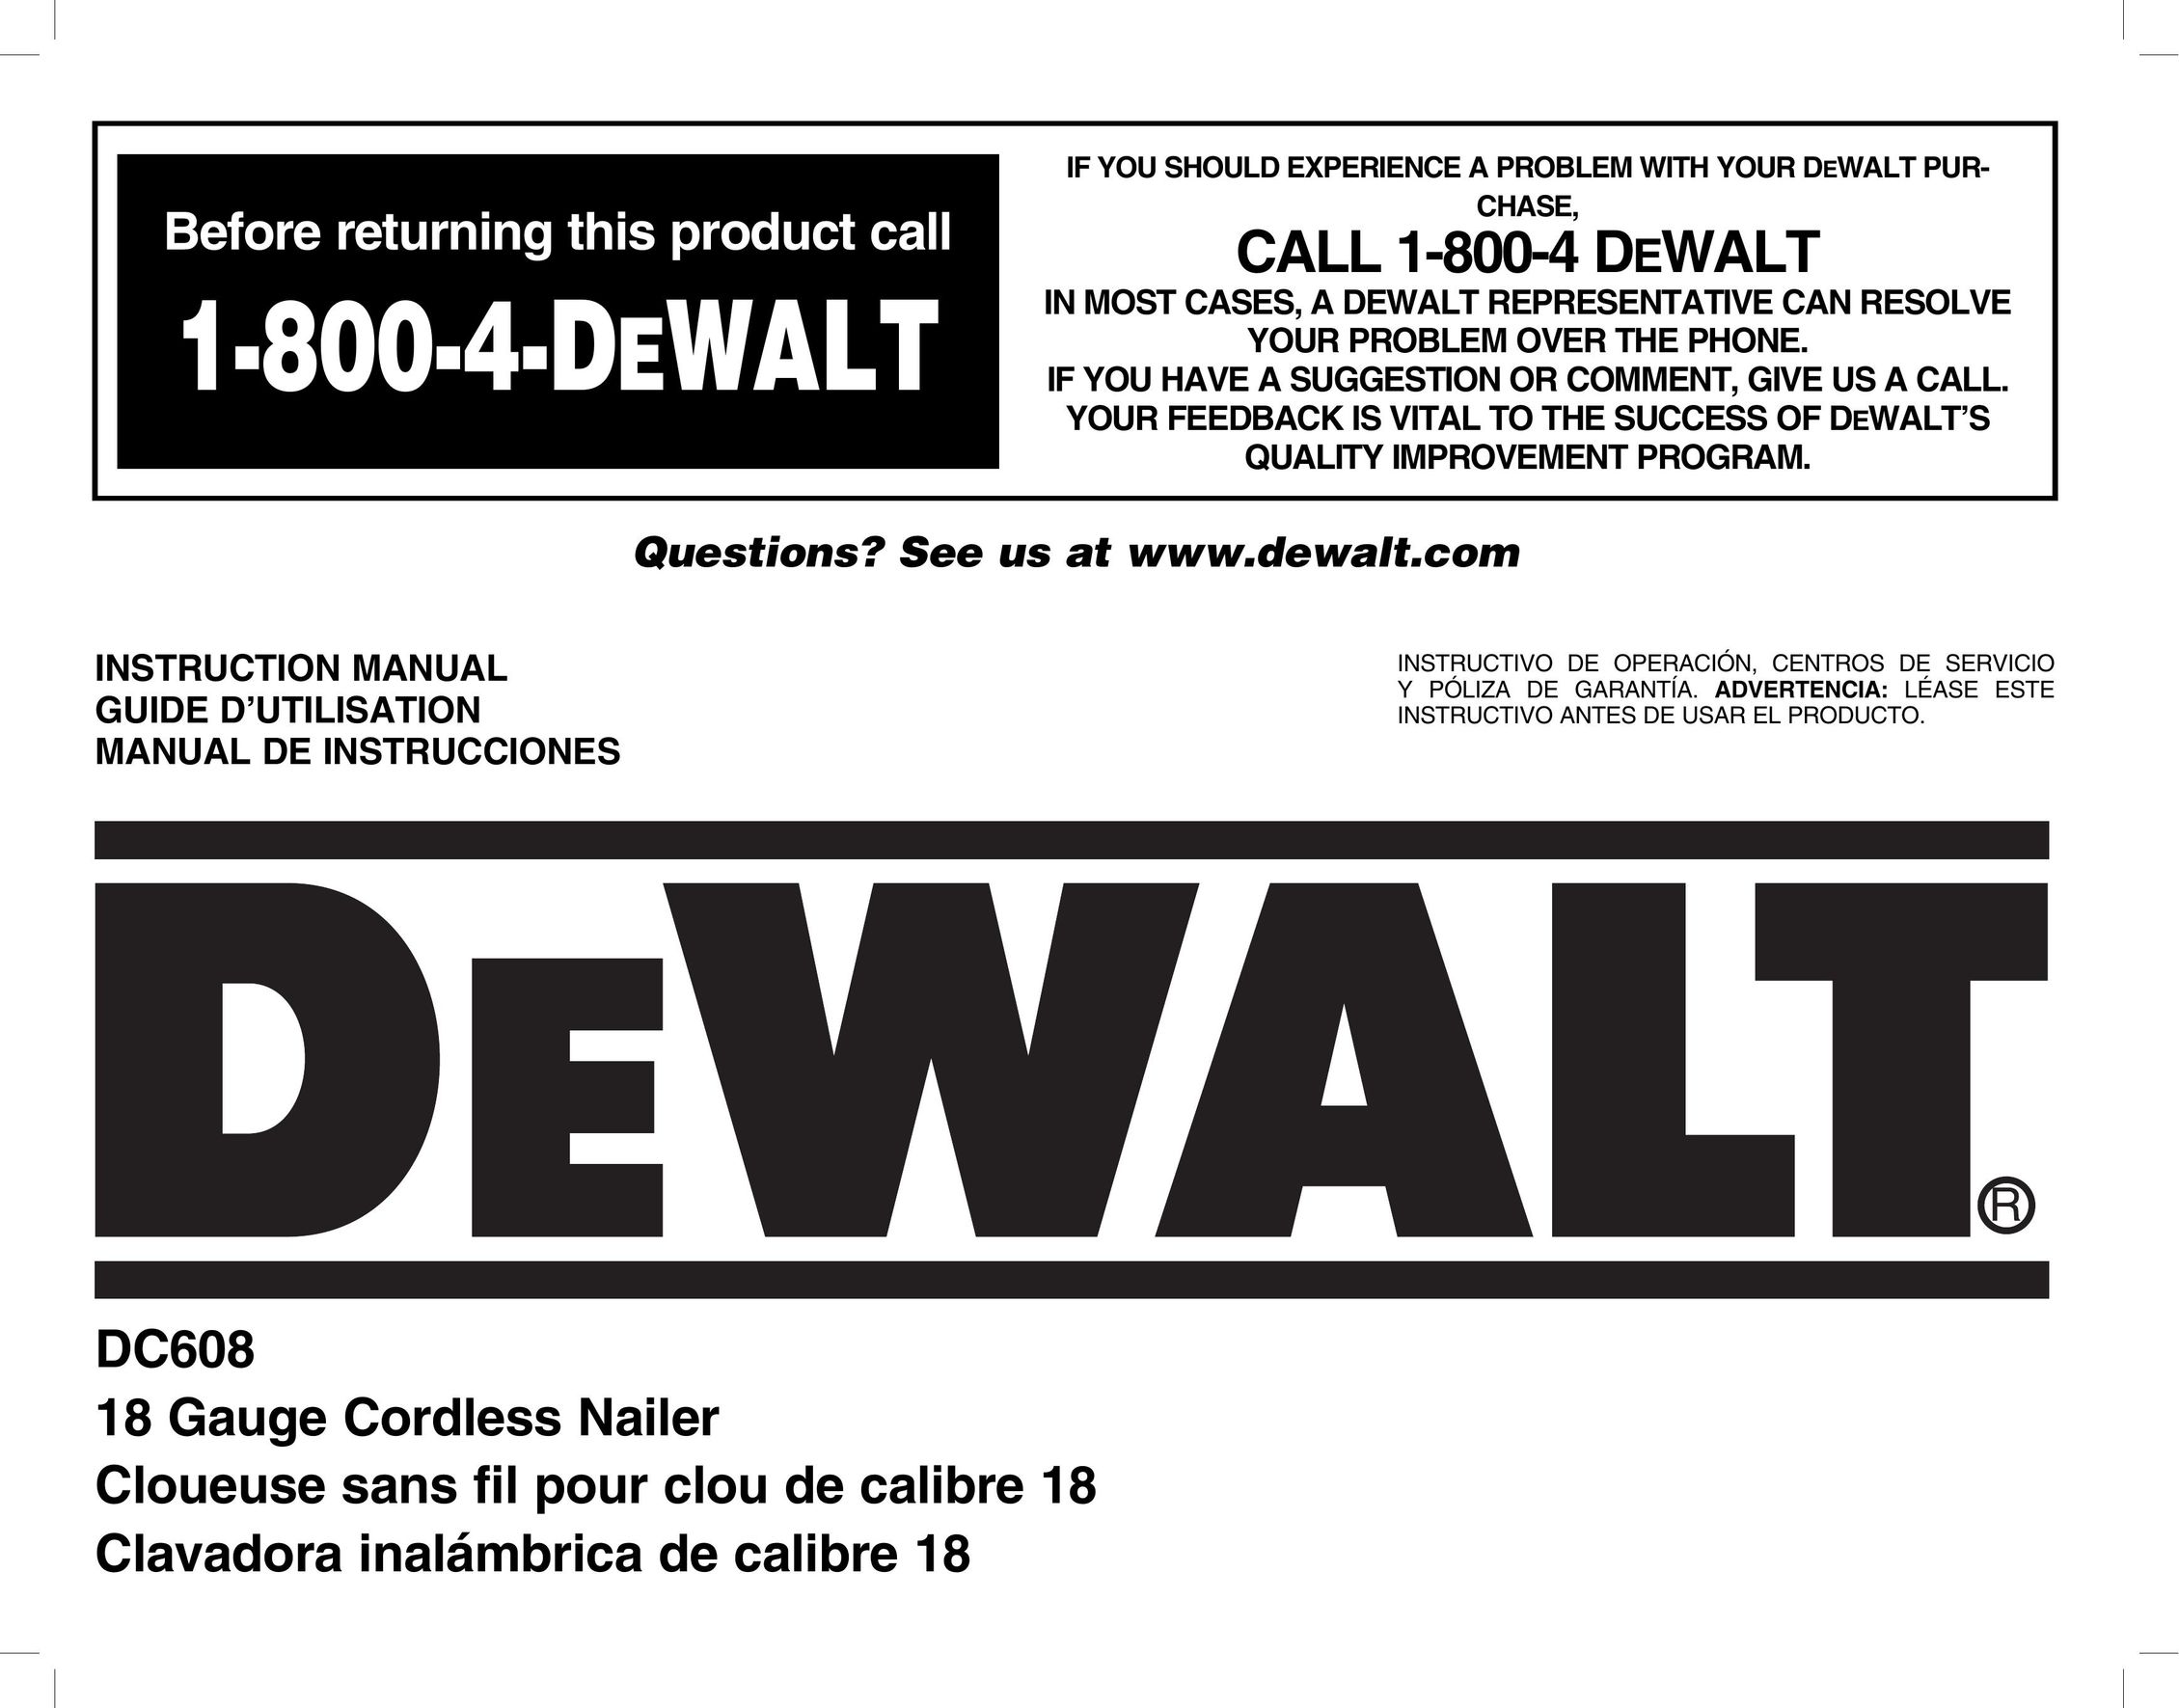 DeWalt DC608 Nail Gun User Manual